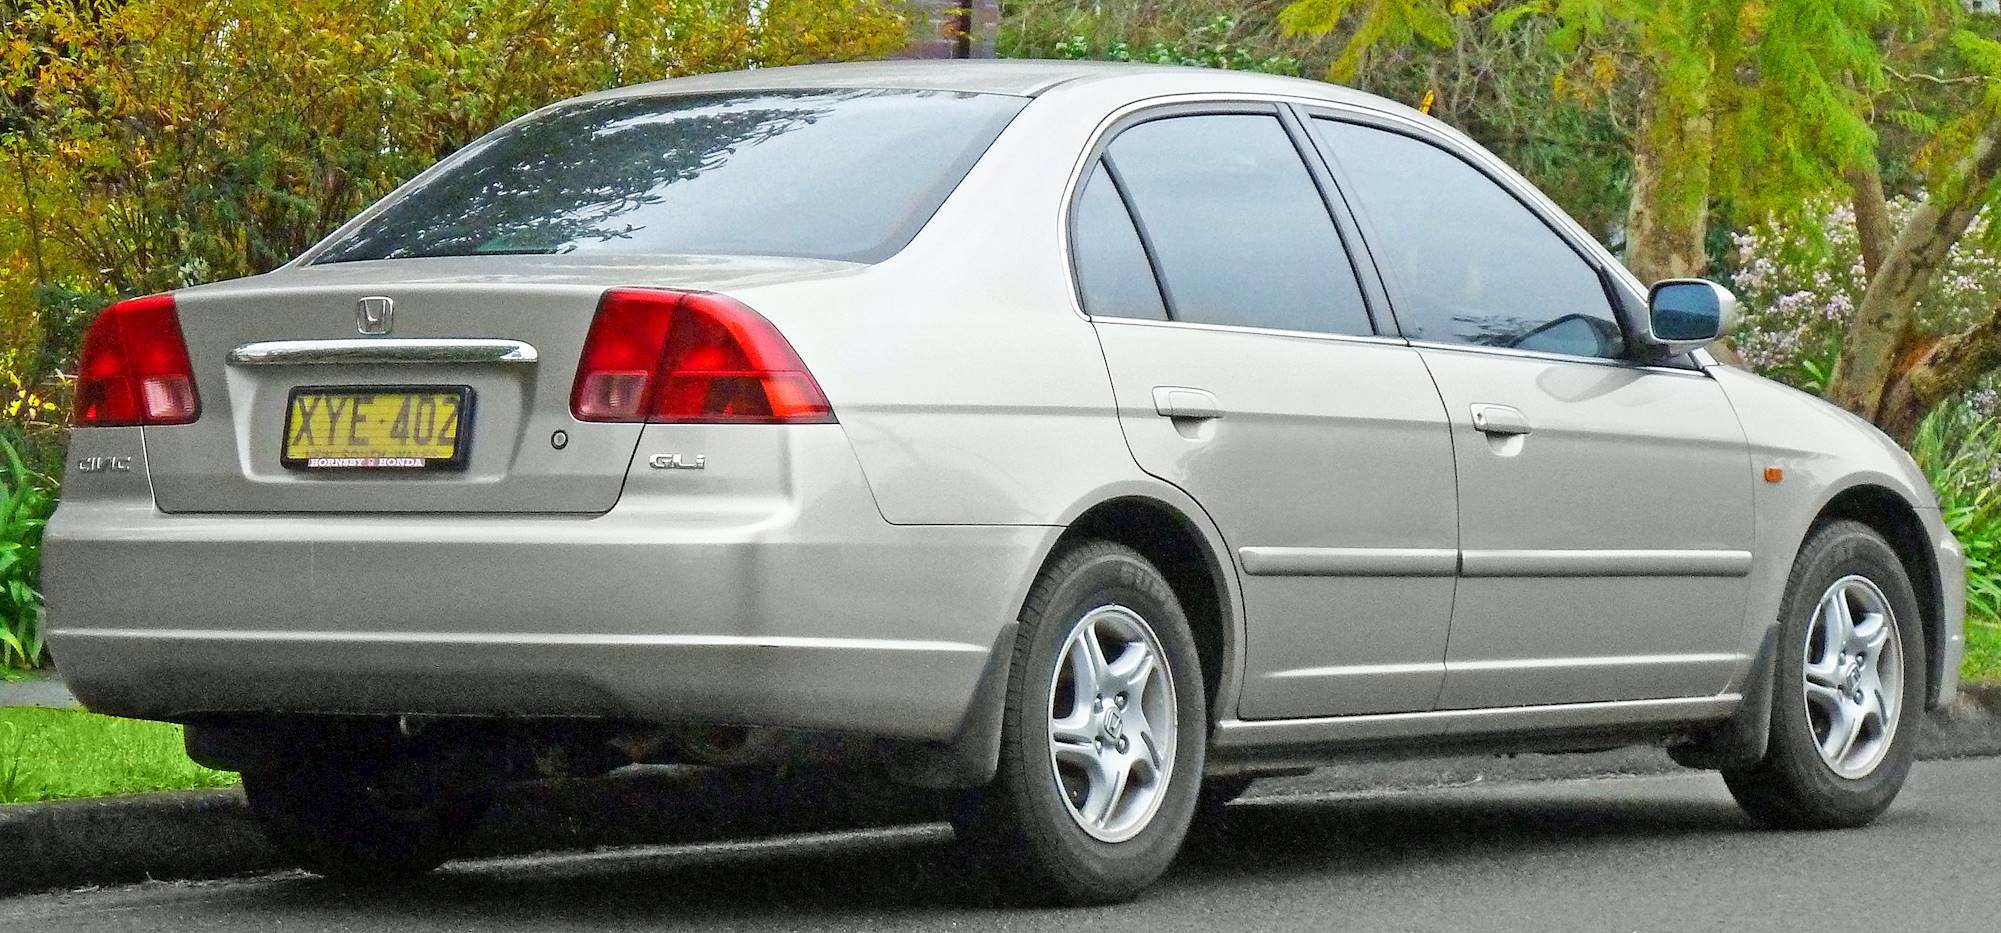 2002 Honda Civic DX - Coupe 1.7L Manual